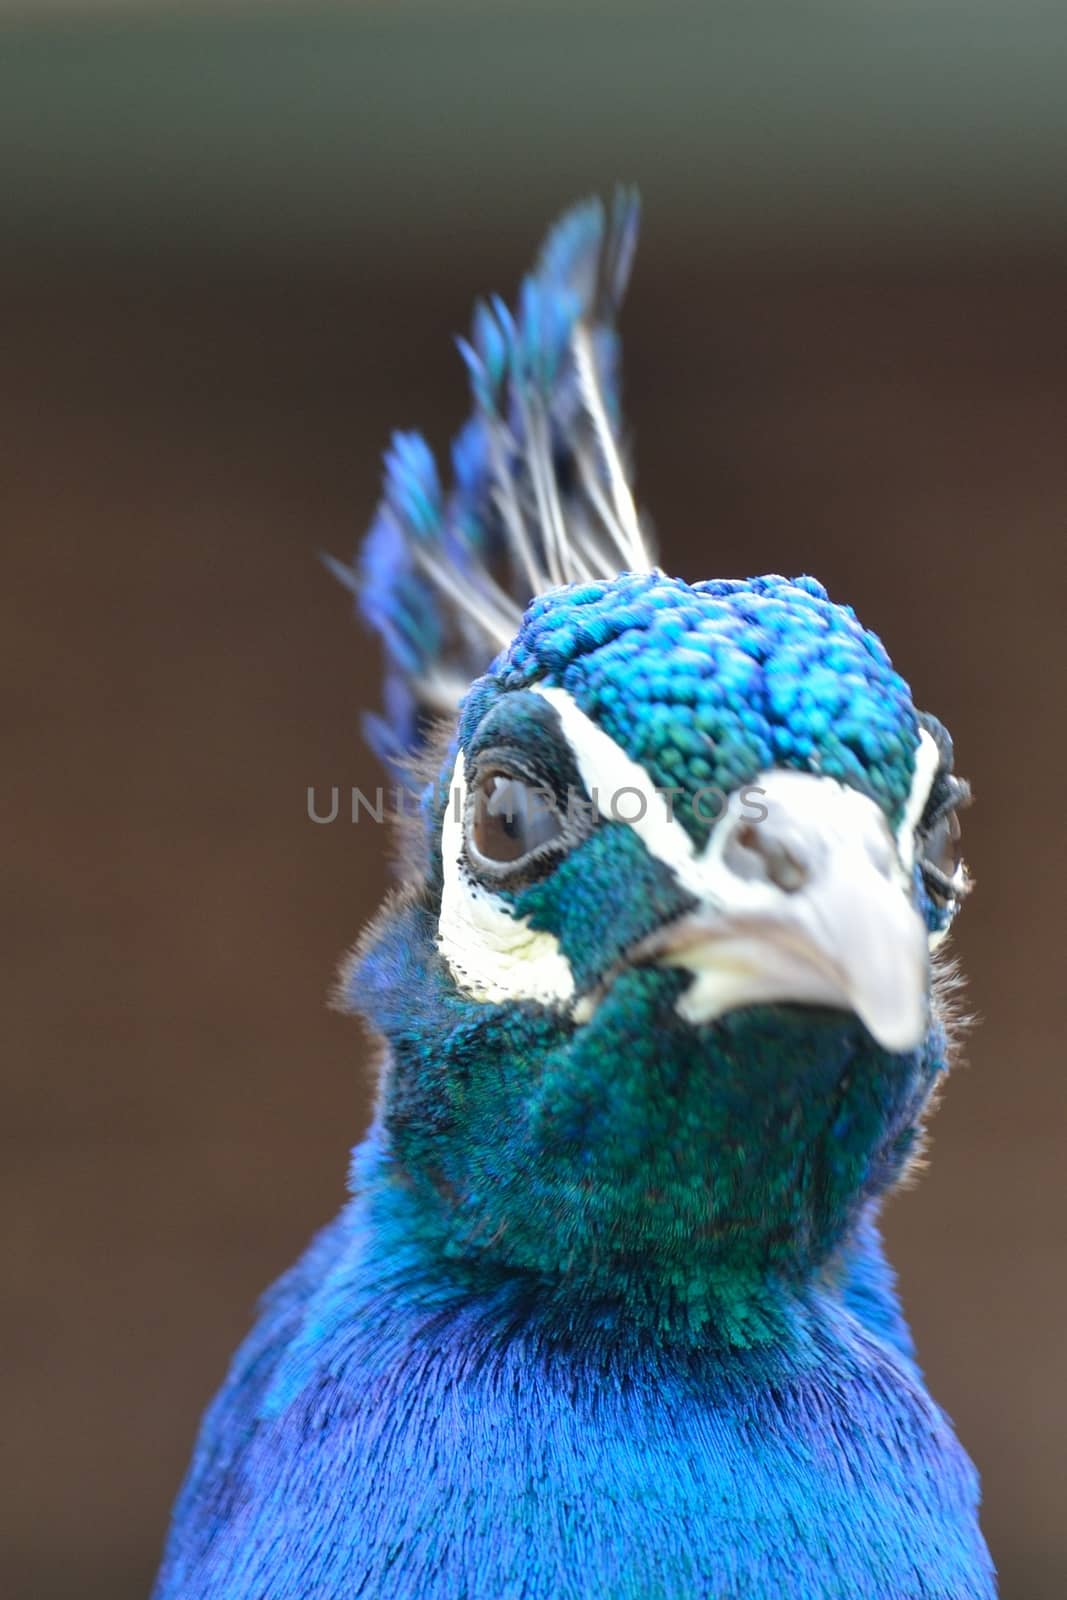 angry peacock head